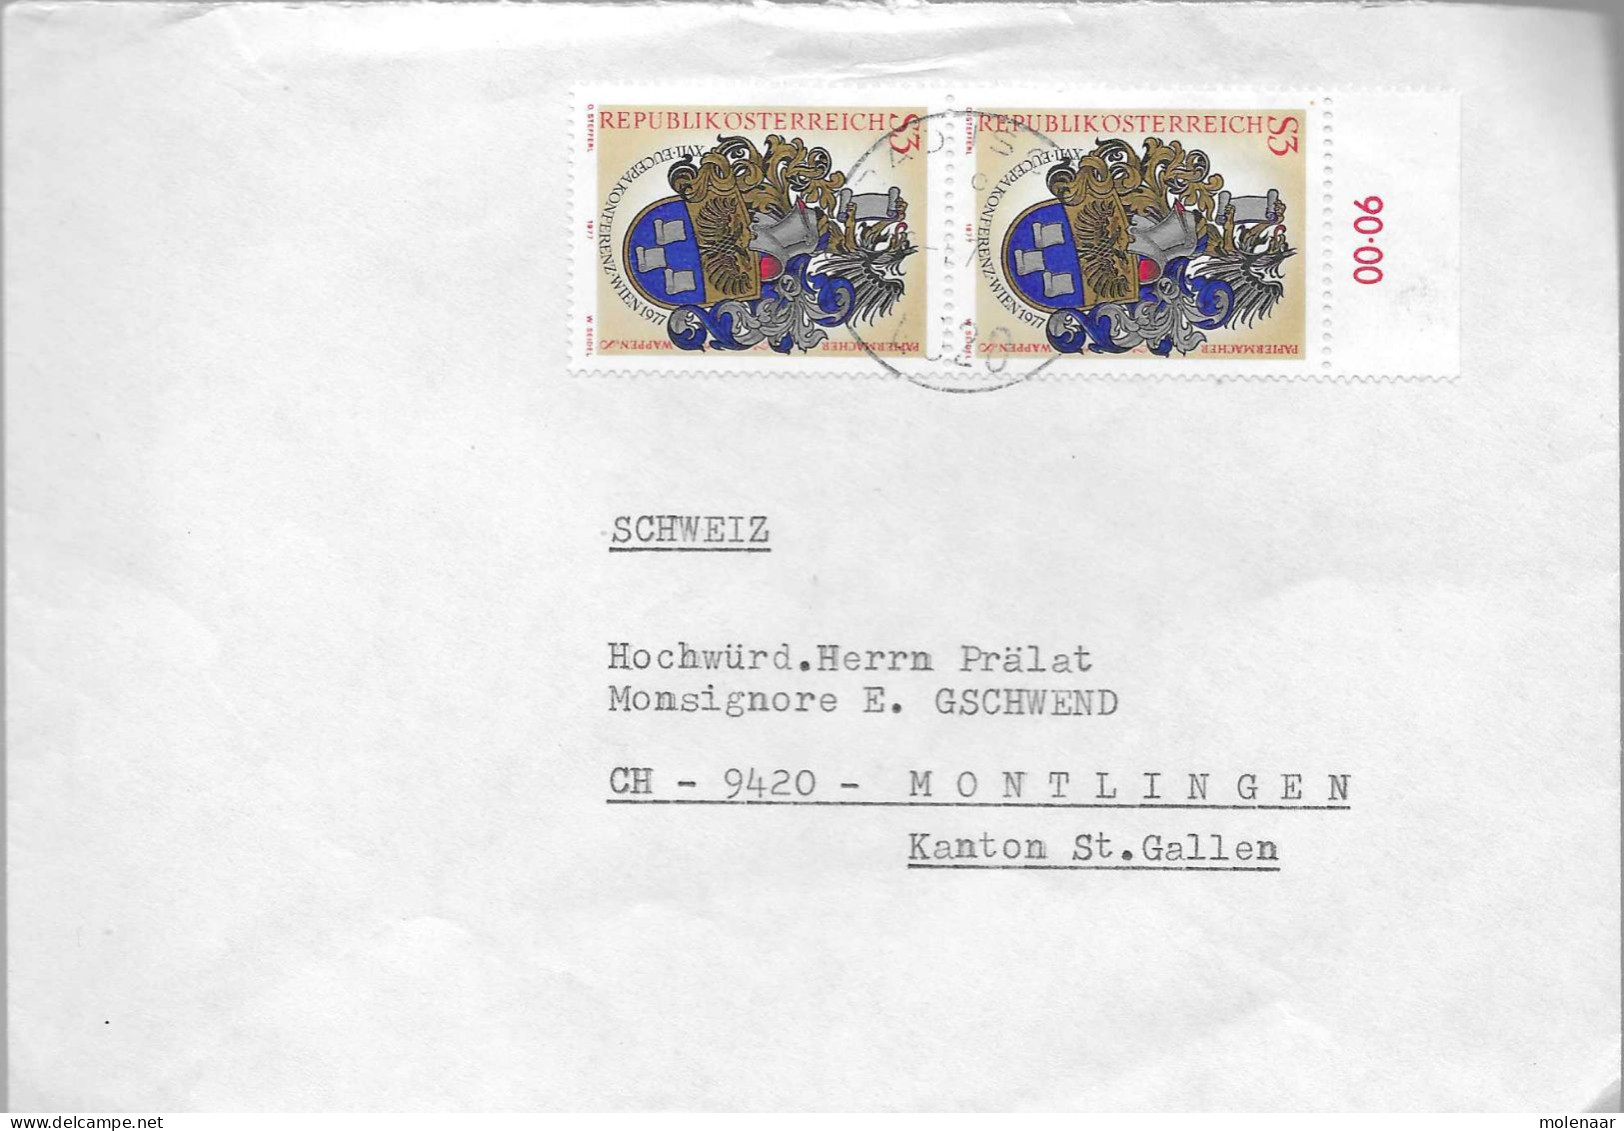 Postzegels > Europa > Oostenrijk > 1945-.... 2de Republiek > 1971-1980 > Brief Met 2x No. 1601 (17739) - Neufs